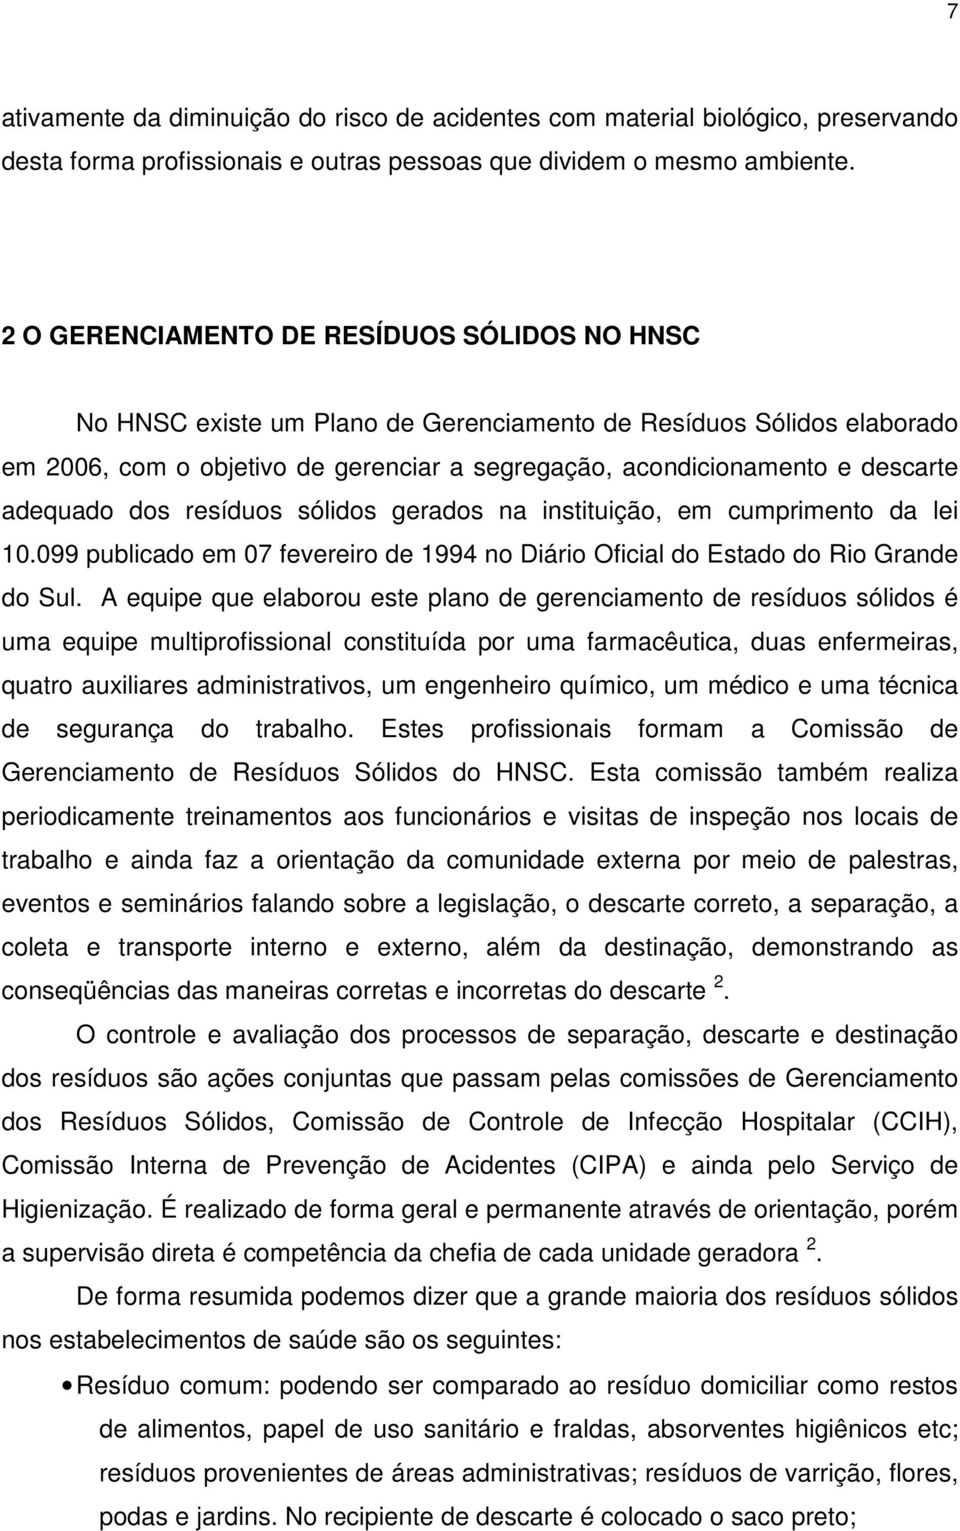 adequado dos resíduos sólidos gerados na instituição, em cumprimento da lei 10.099 publicado em 07 fevereiro de 1994 no Diário Oficial do Estado do Rio Grande do Sul.